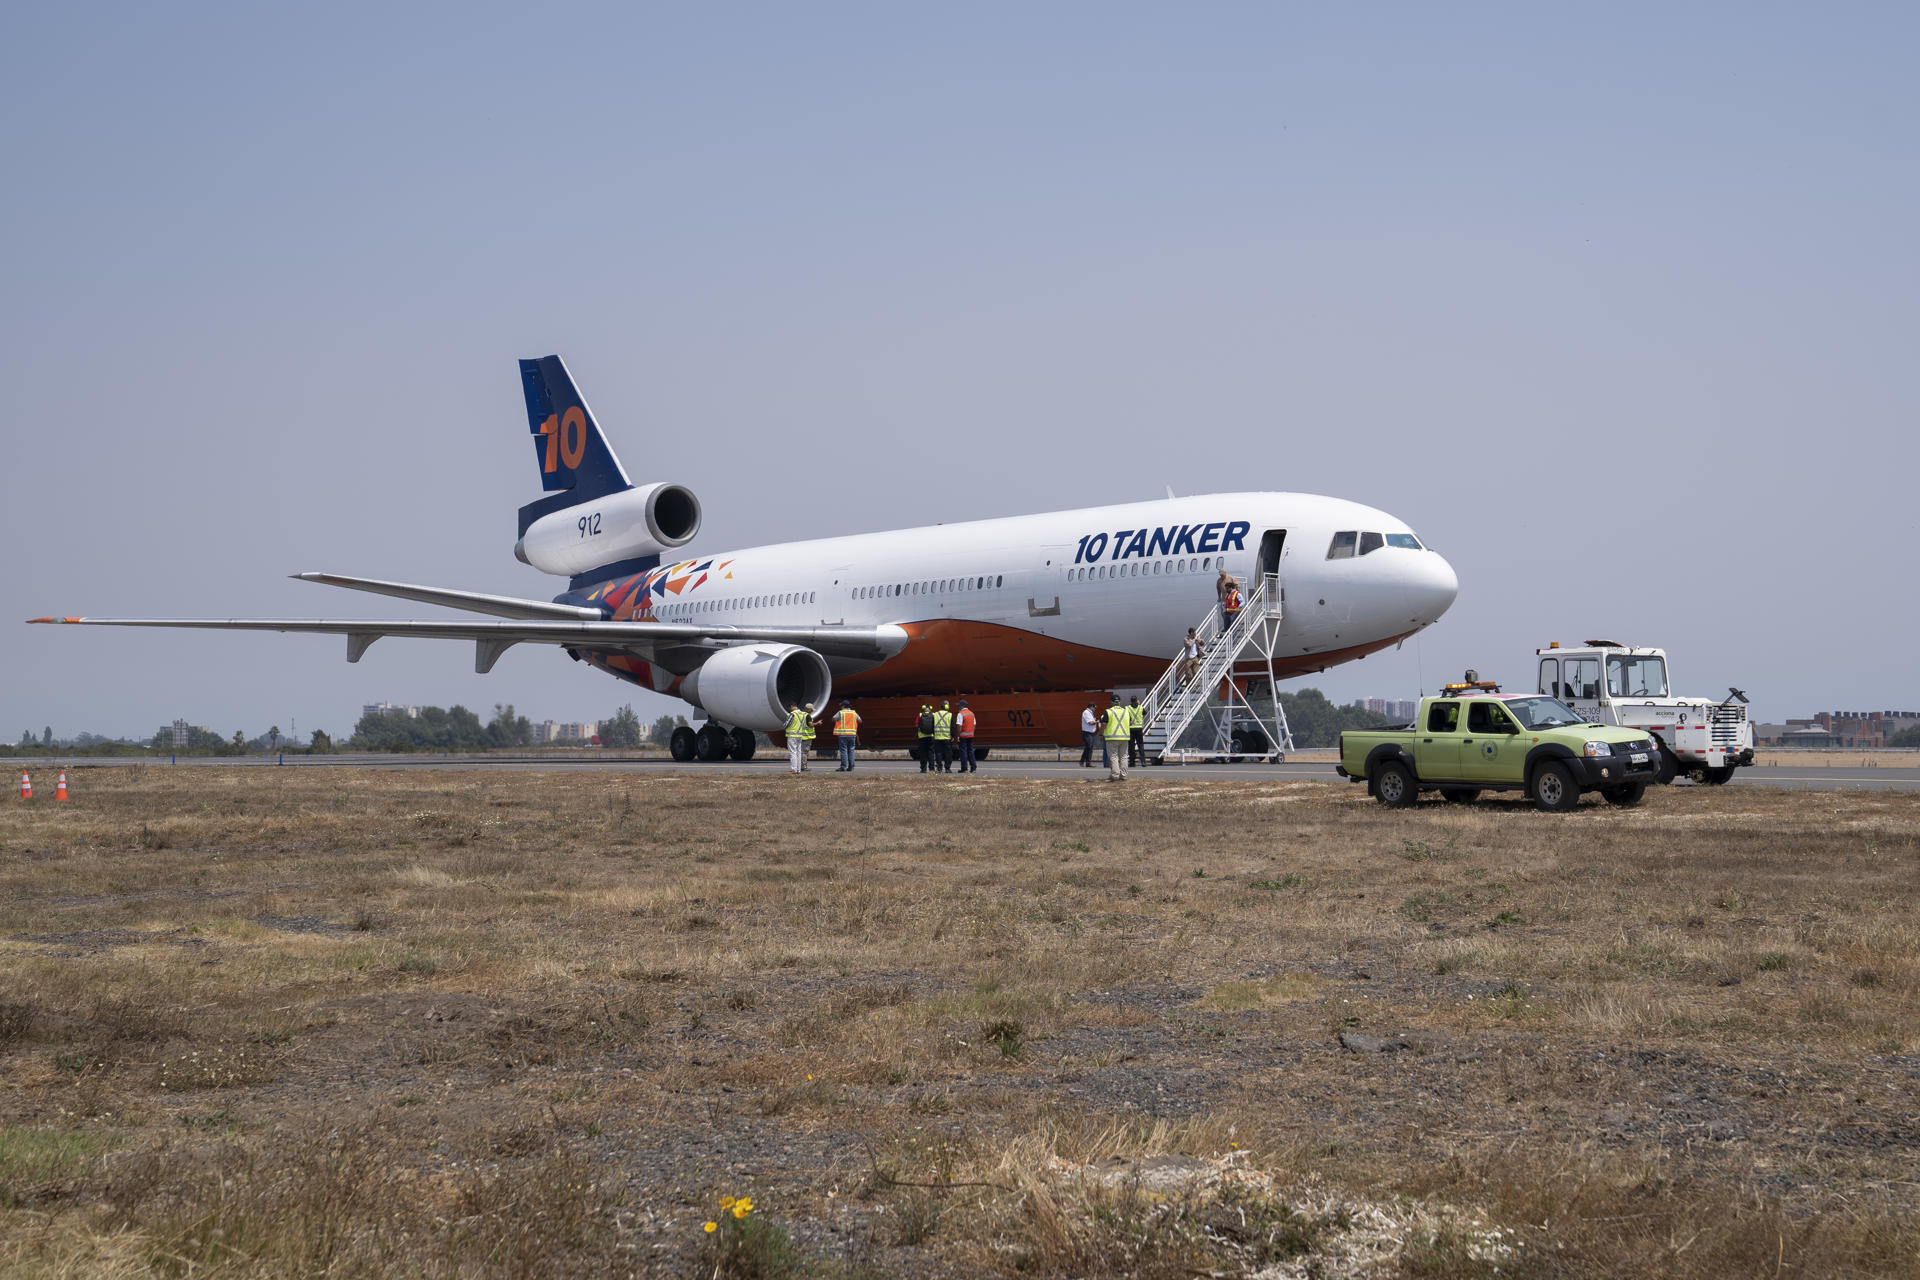 El mayor avión antincendios del mundo llega al arrasado sur de Chile